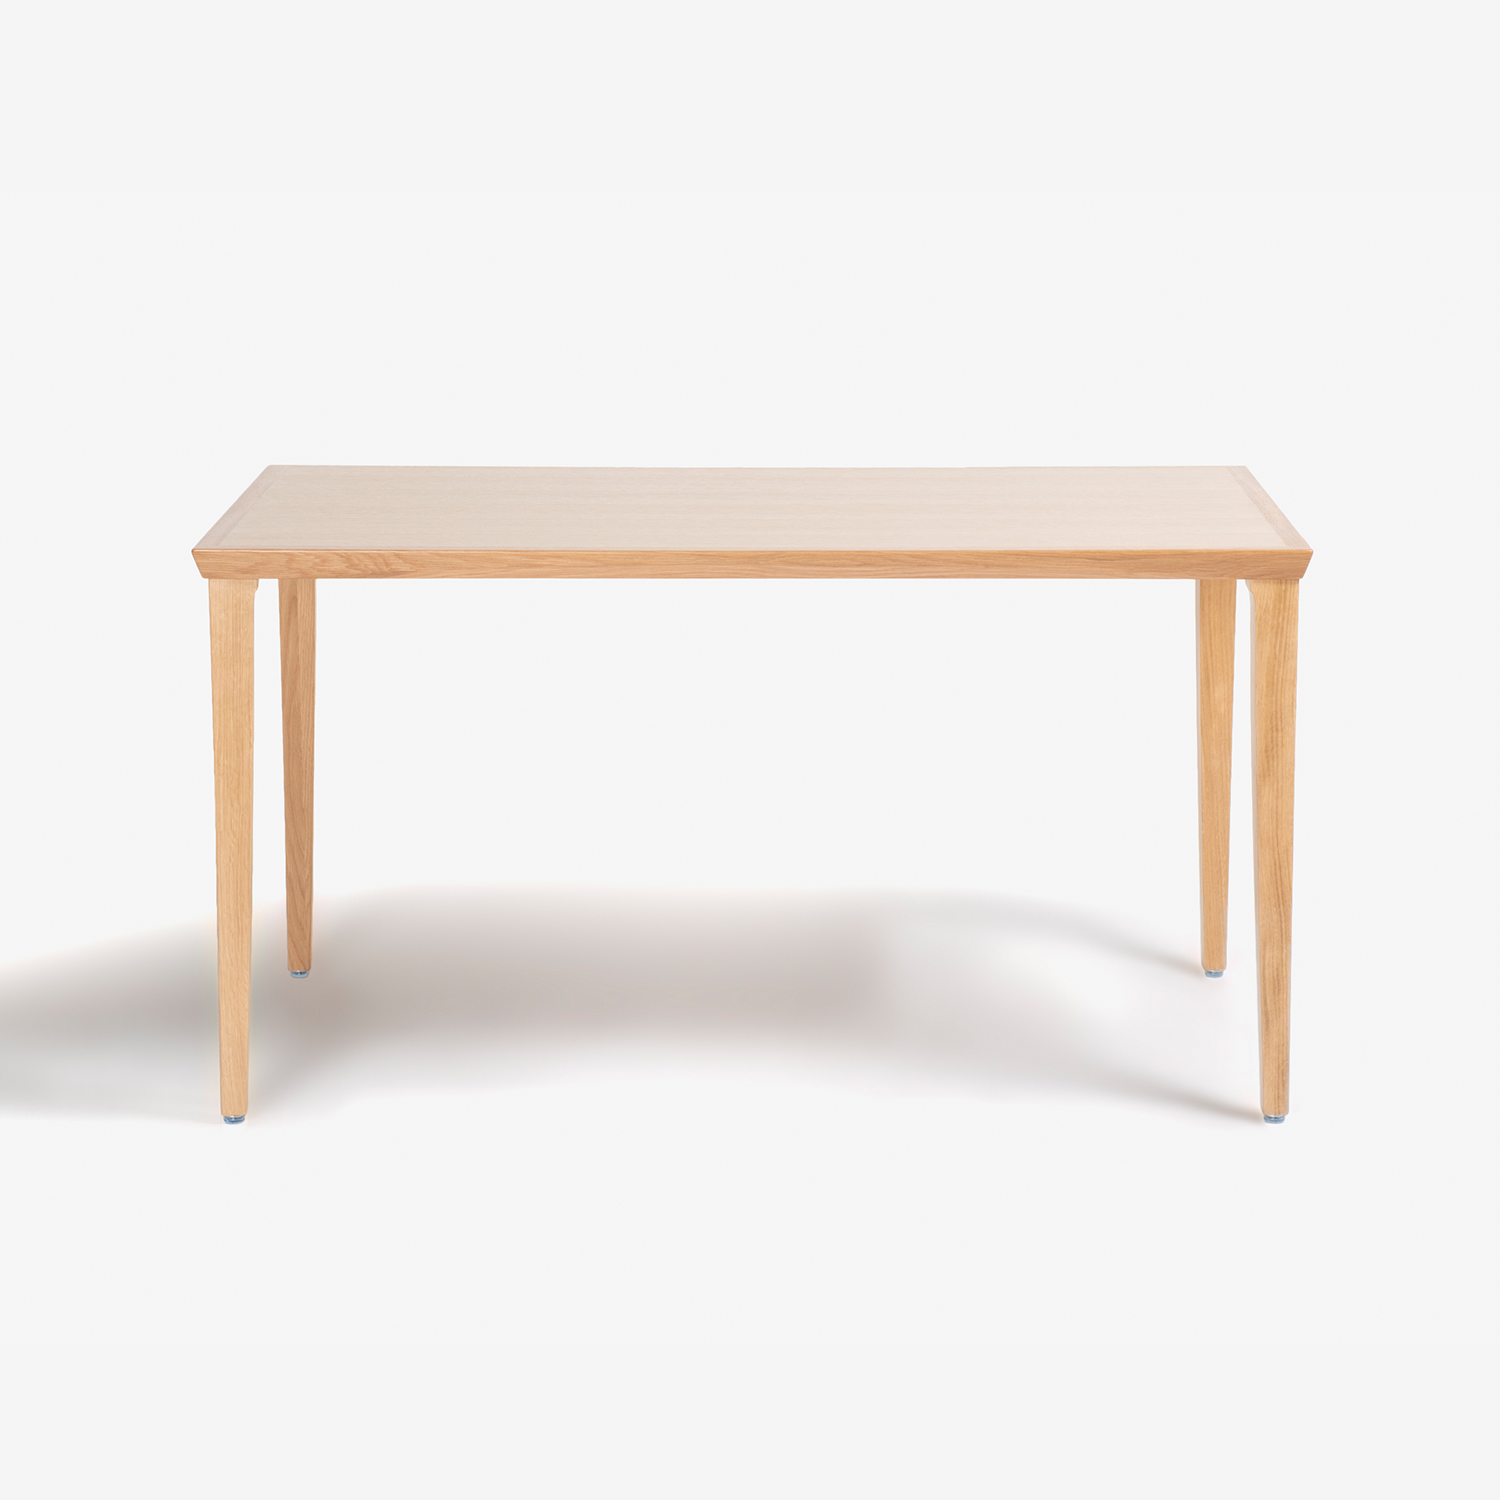 秋田木工 ダイニングテーブル「N-T005」ナラ材 ホワイトオーク色 全3サイズ【在庫商品特別ご提供価格のため20%off】